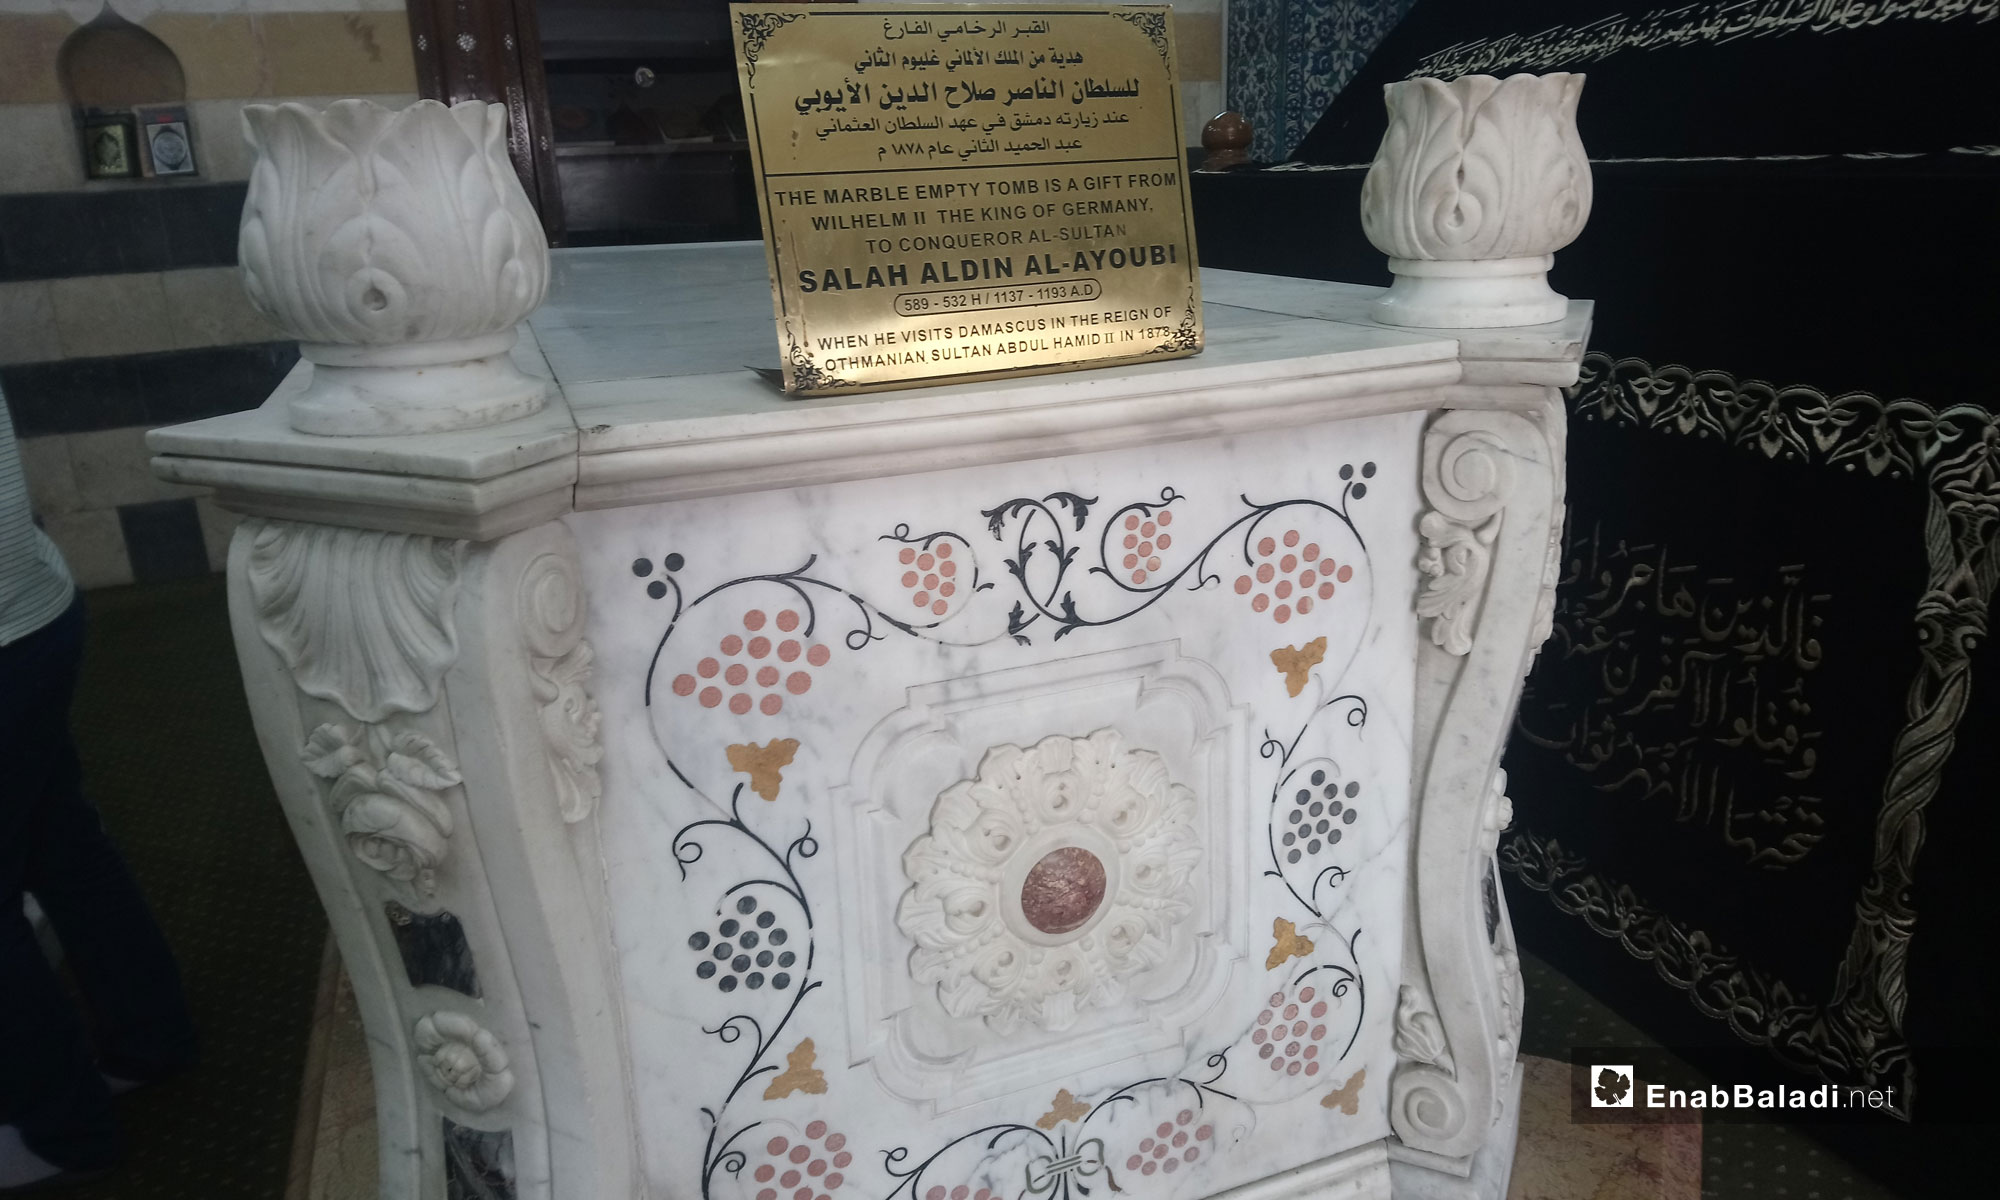   ضريح السلطان صلاح الدين الأيوبي في دمشق - 1 من آيار 2019 (عنب بلدي)